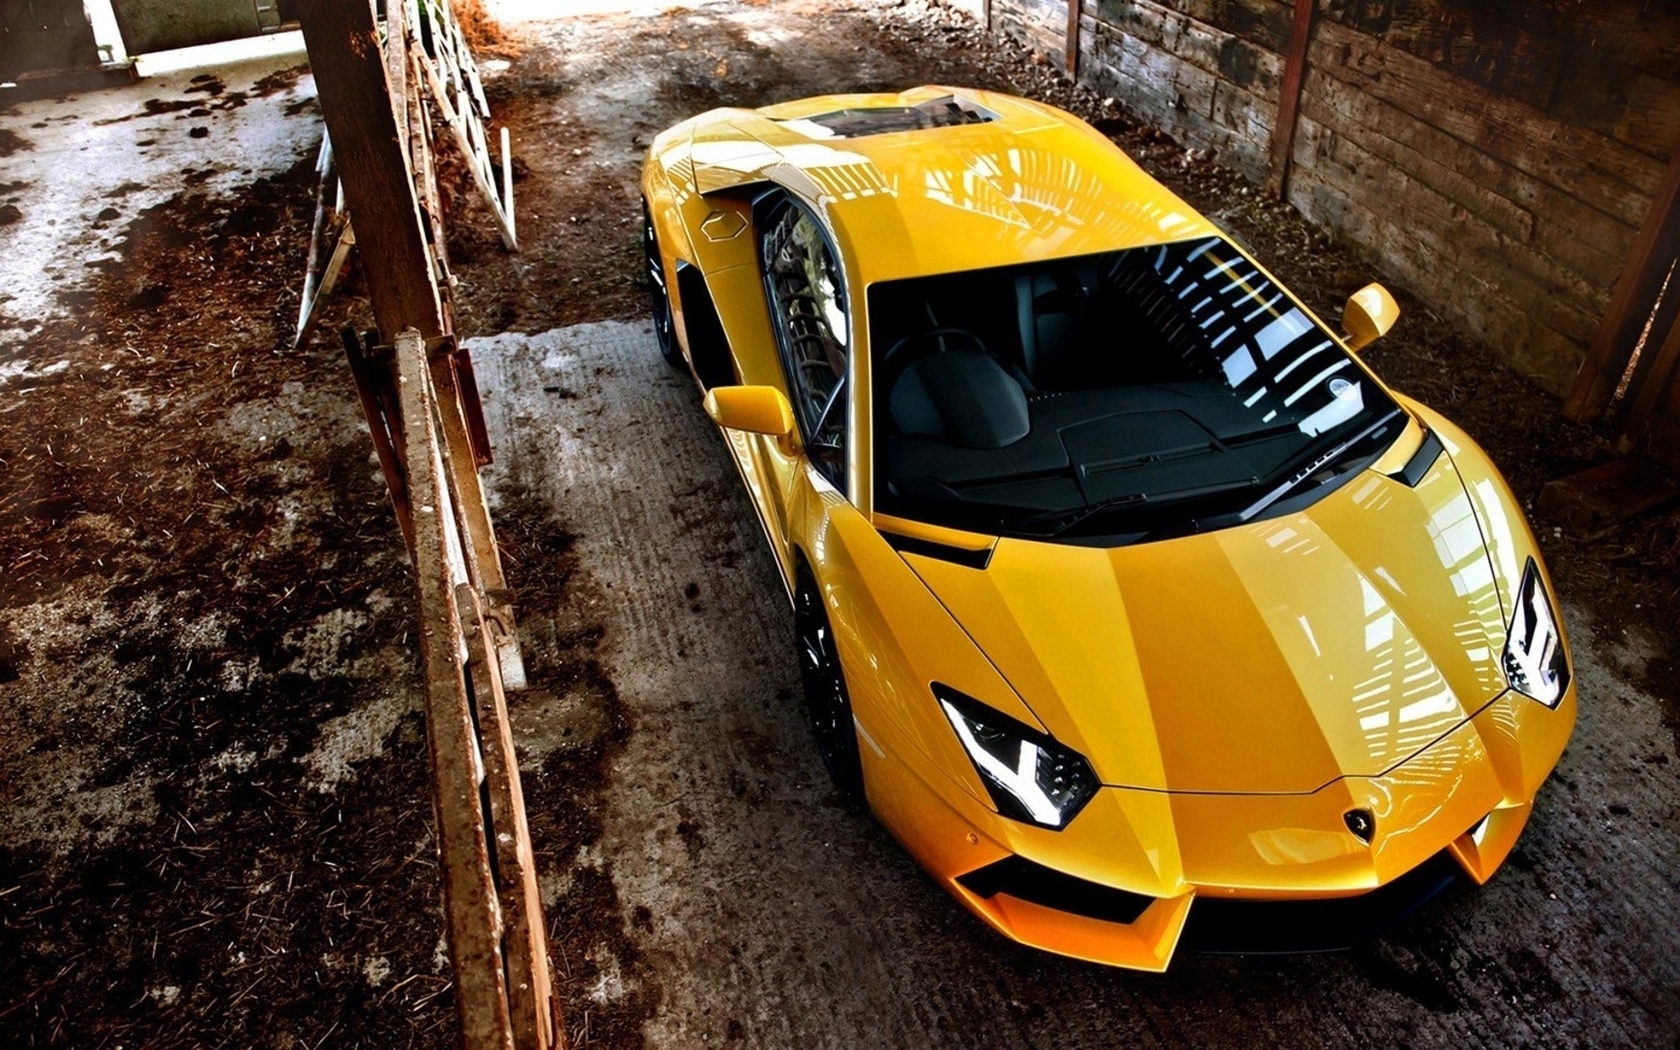 Картинка: Ламборджини, Авентадор, Lamborghini Aventador, жёлтый, спорткара, фары, отражение